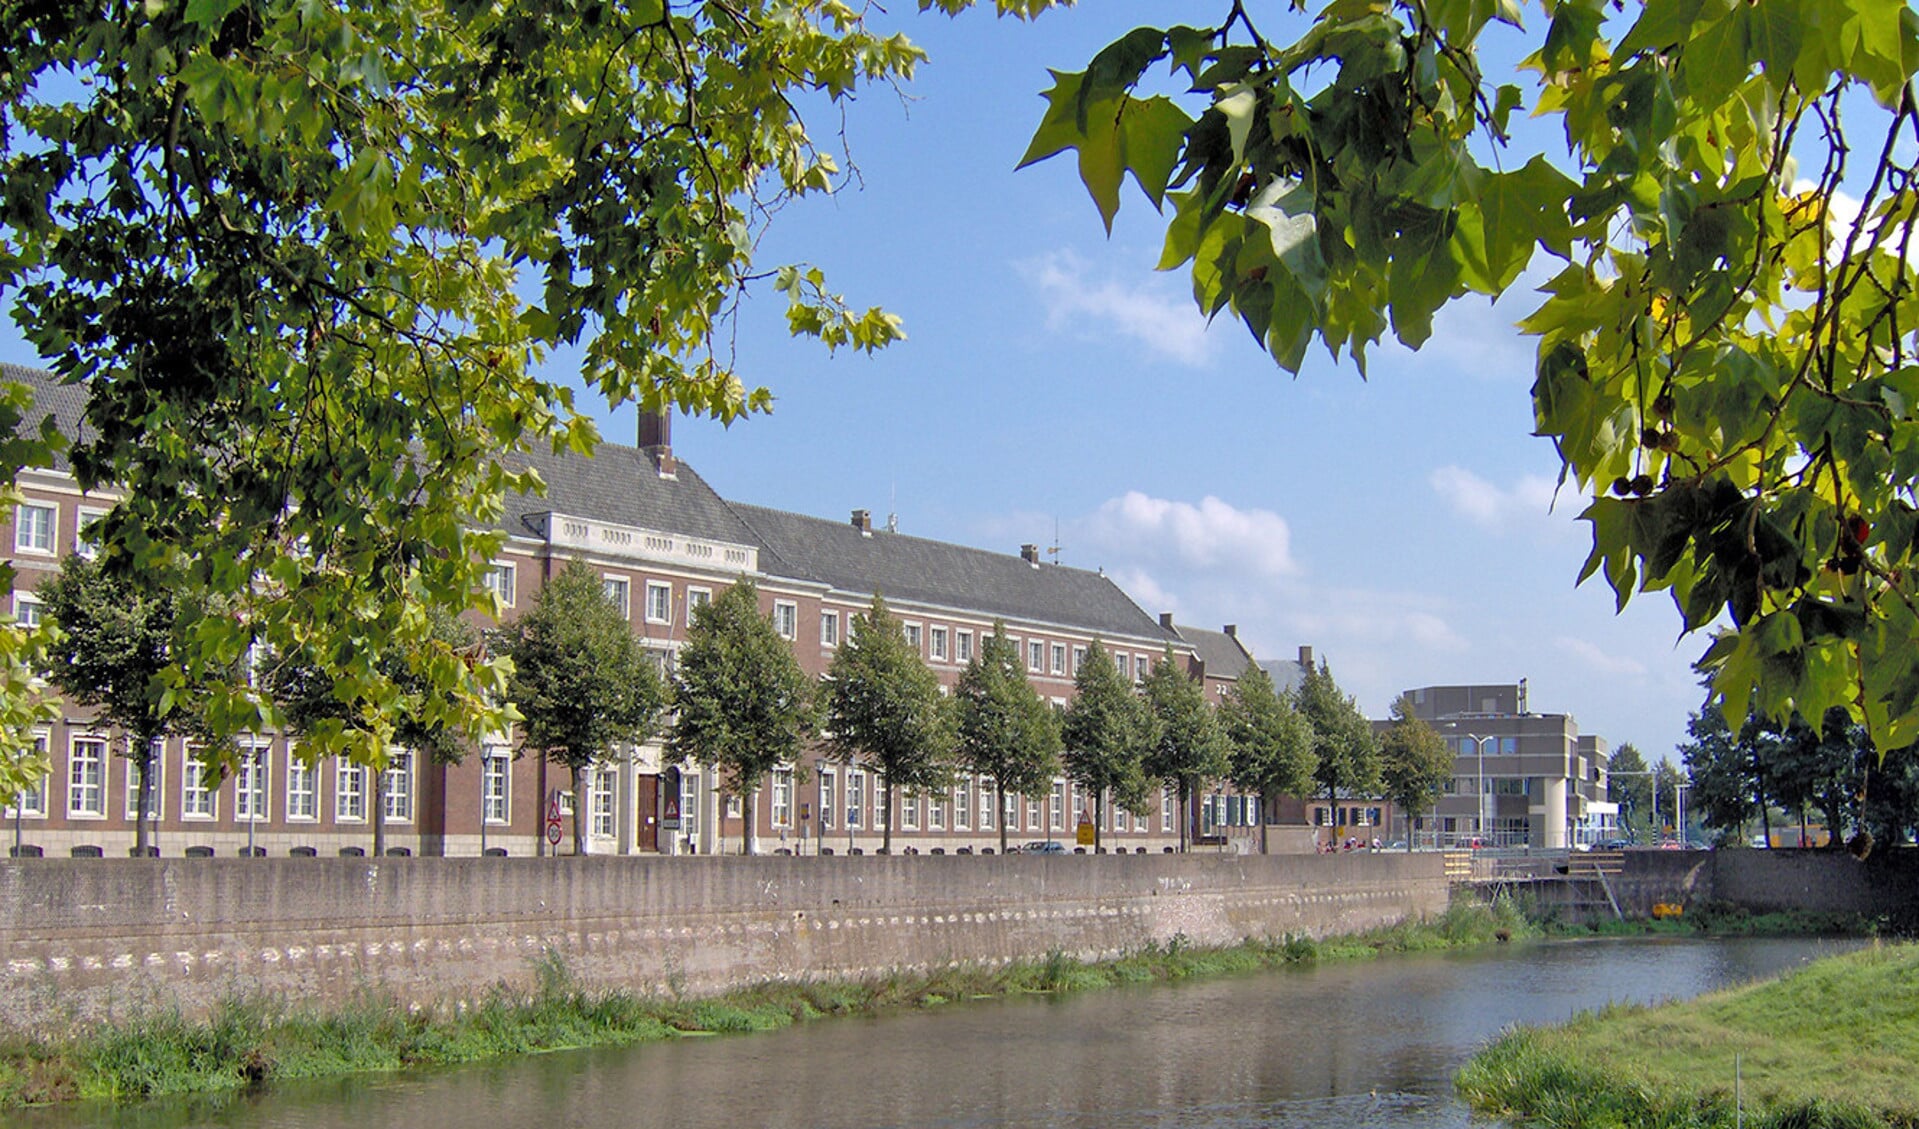 De stad Den Bosch is bekend om zijn vestingwerken. Vooral vanaf het water is daarvan nog heel wat te zien. Maar de vraag is hoe ver je moet gaan in het wllen behouden van historisch erfgoed.